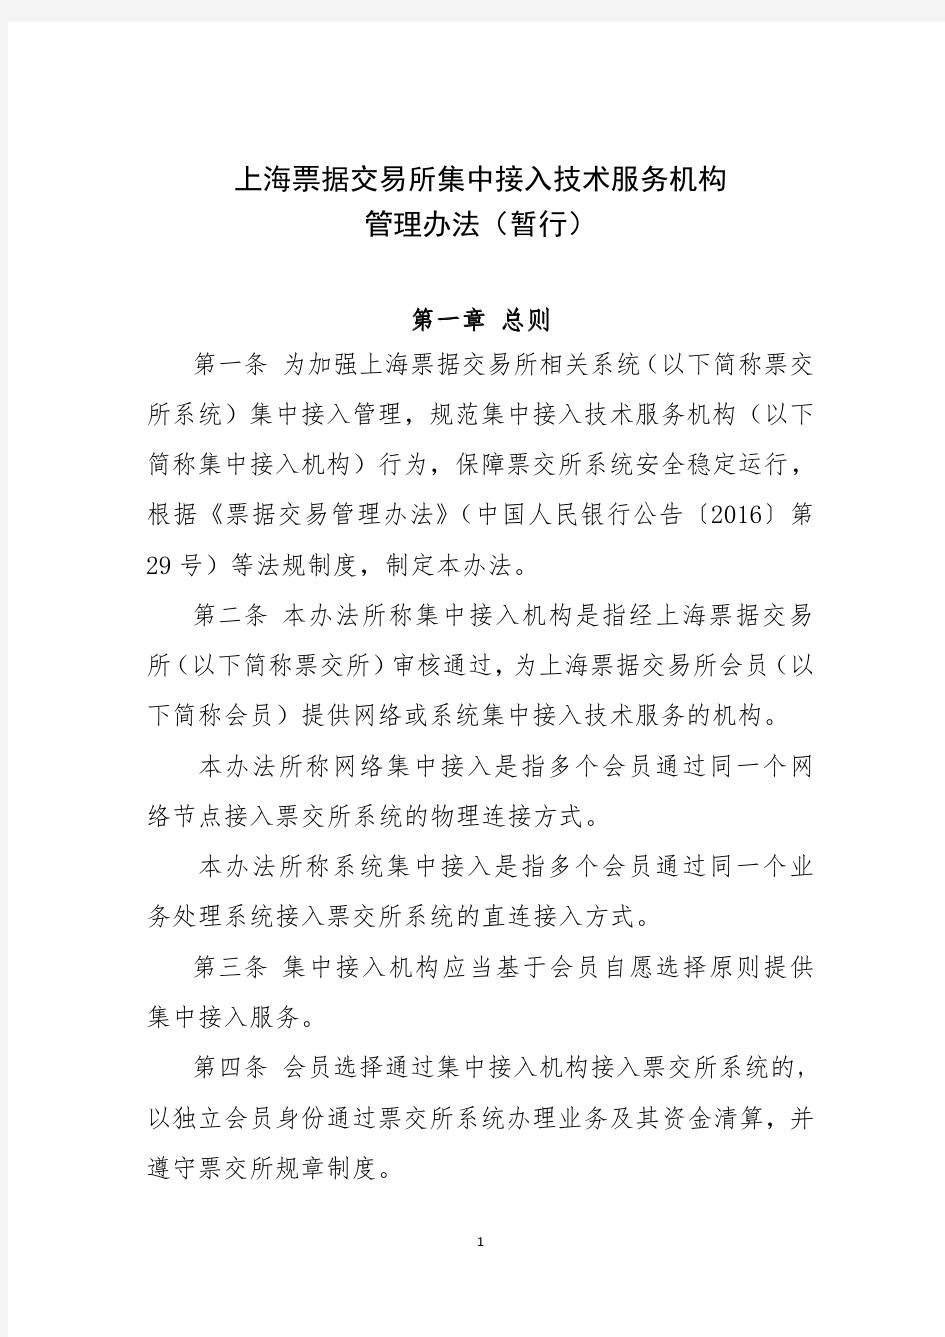 上海票据交易所集中接入技术服务机构